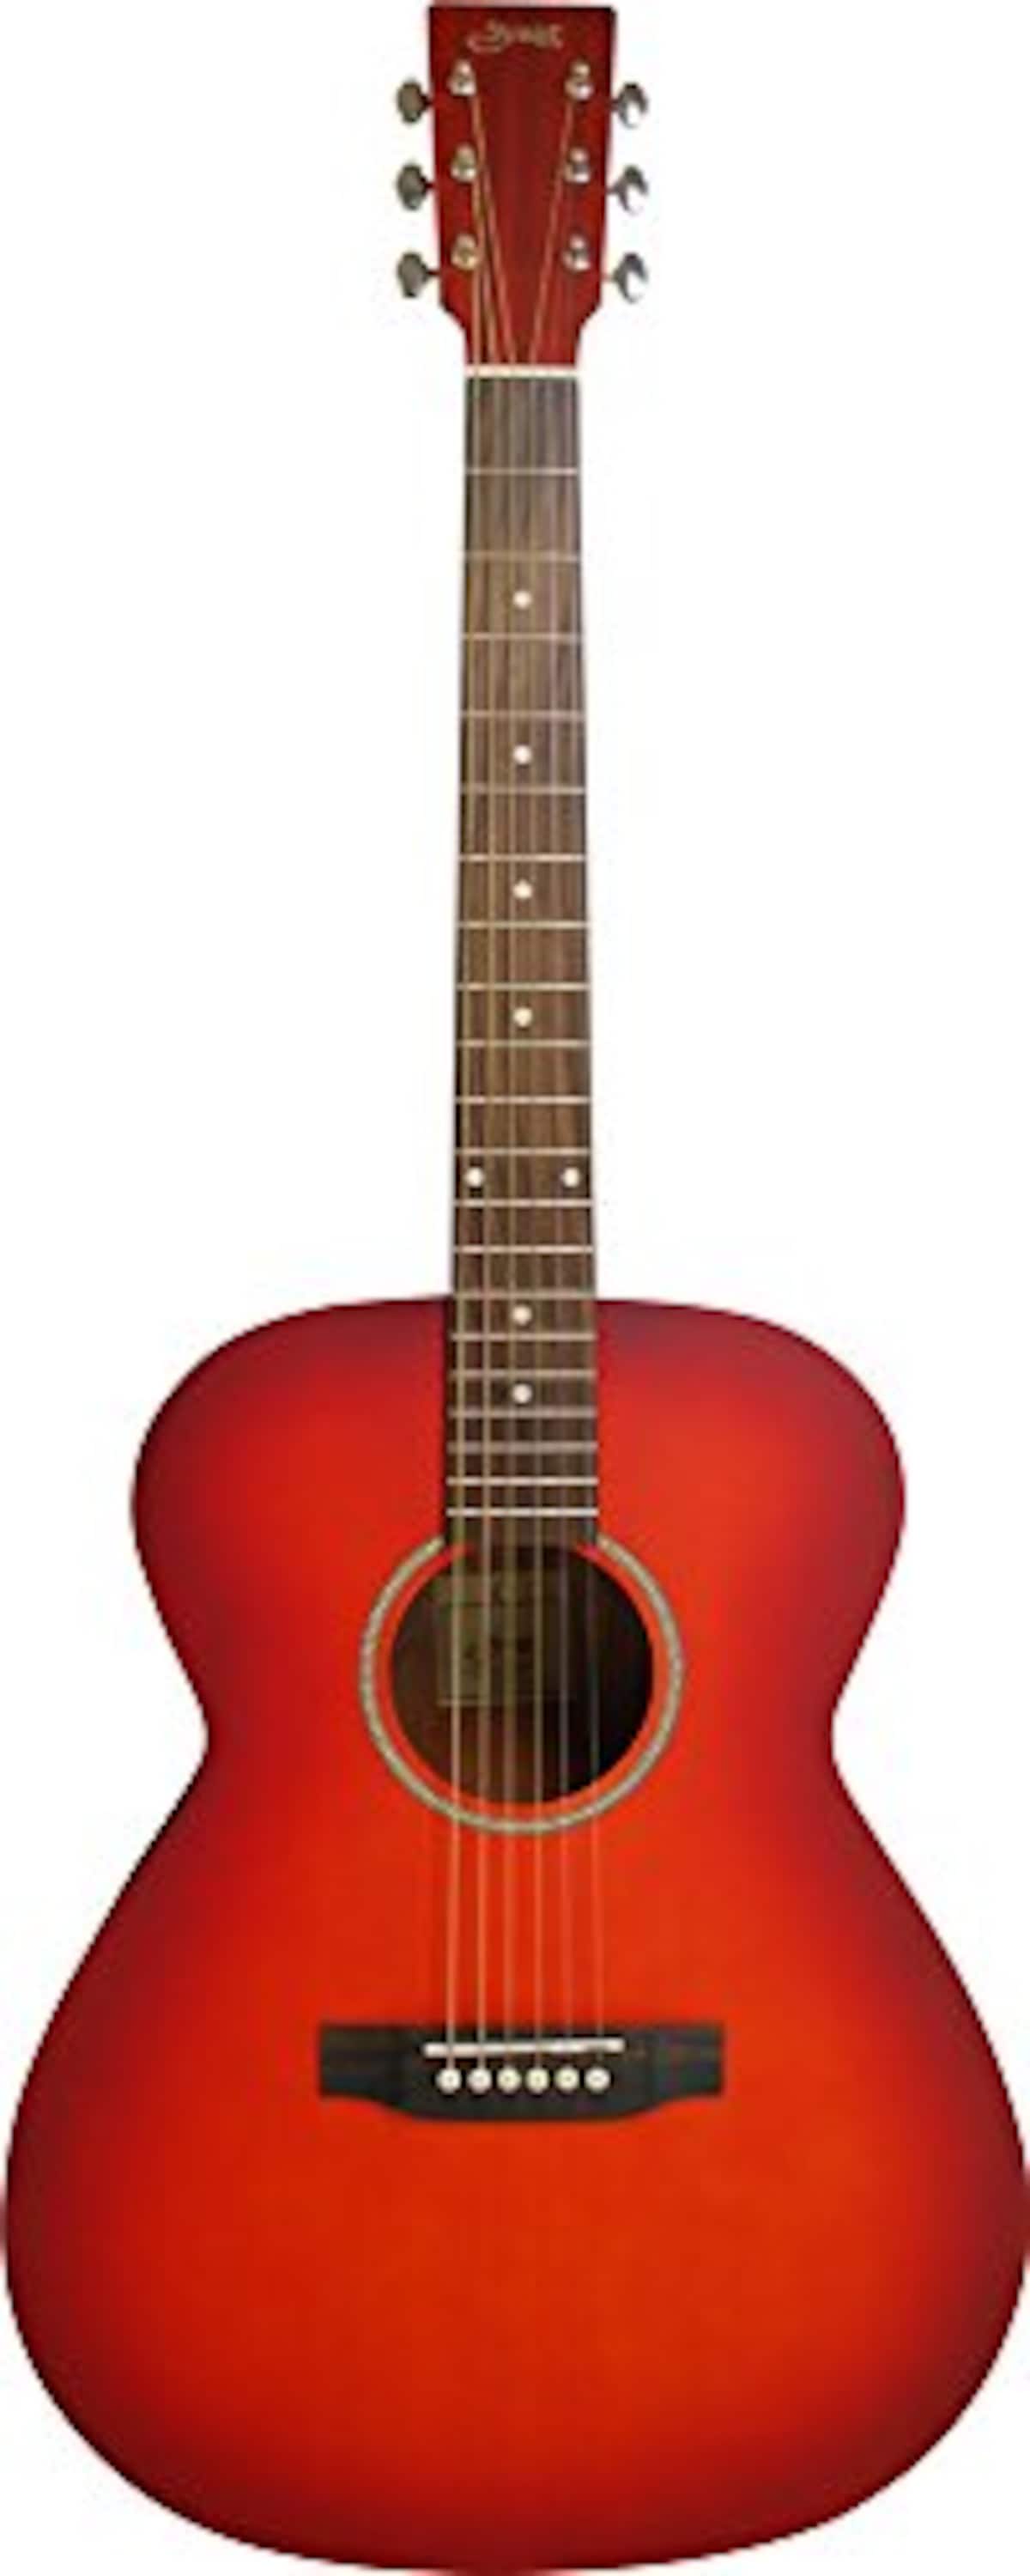 Limited Series アコースティックギター